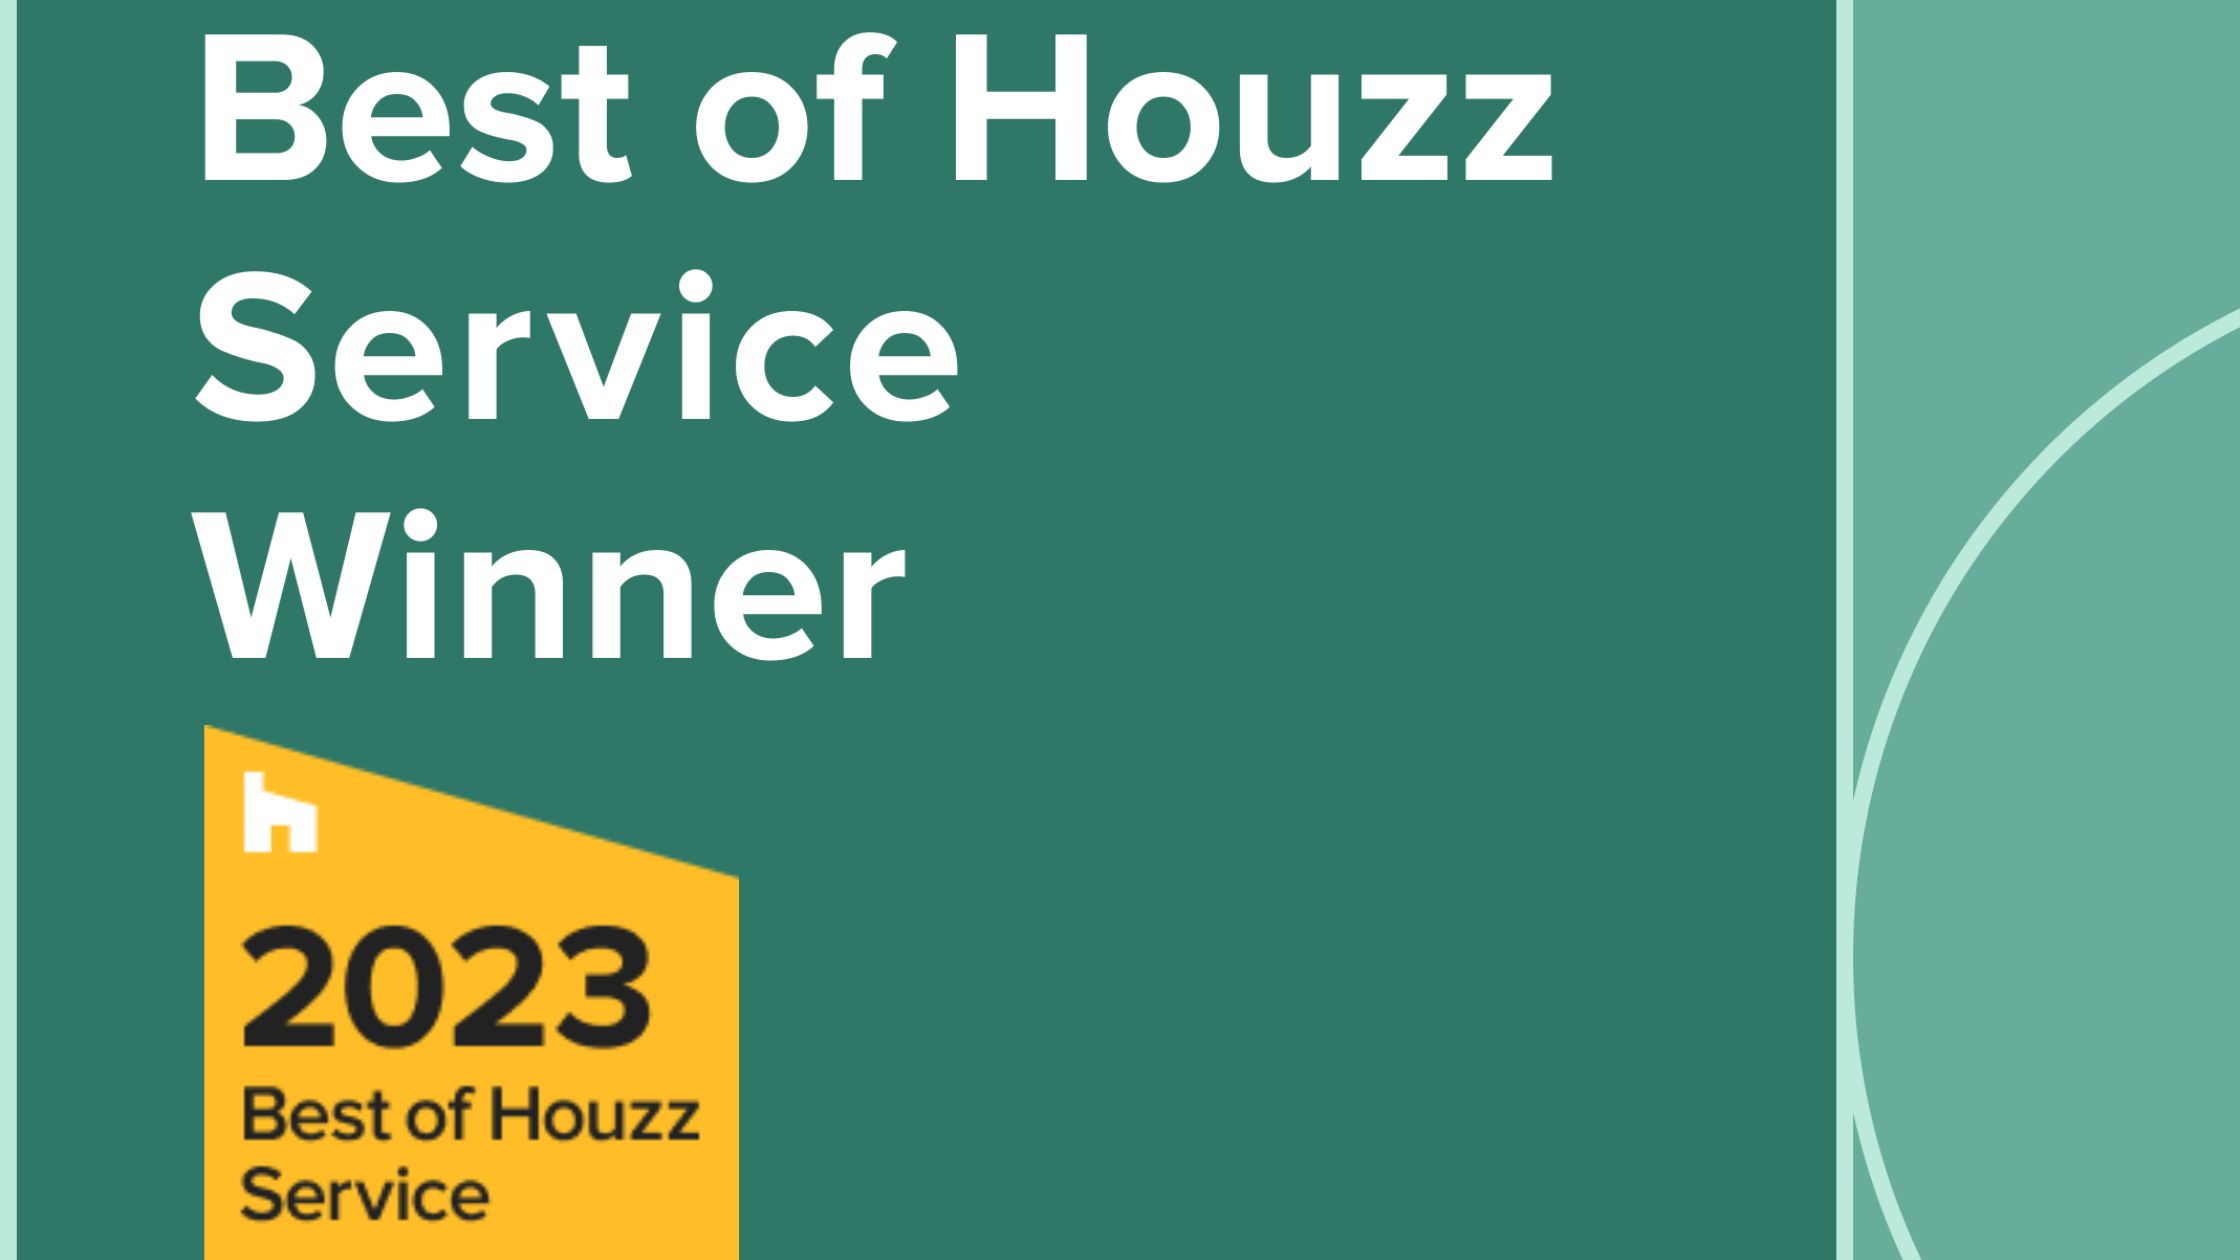 Winner 2023 Best of Houzz Award for Customer Service Harmony Design